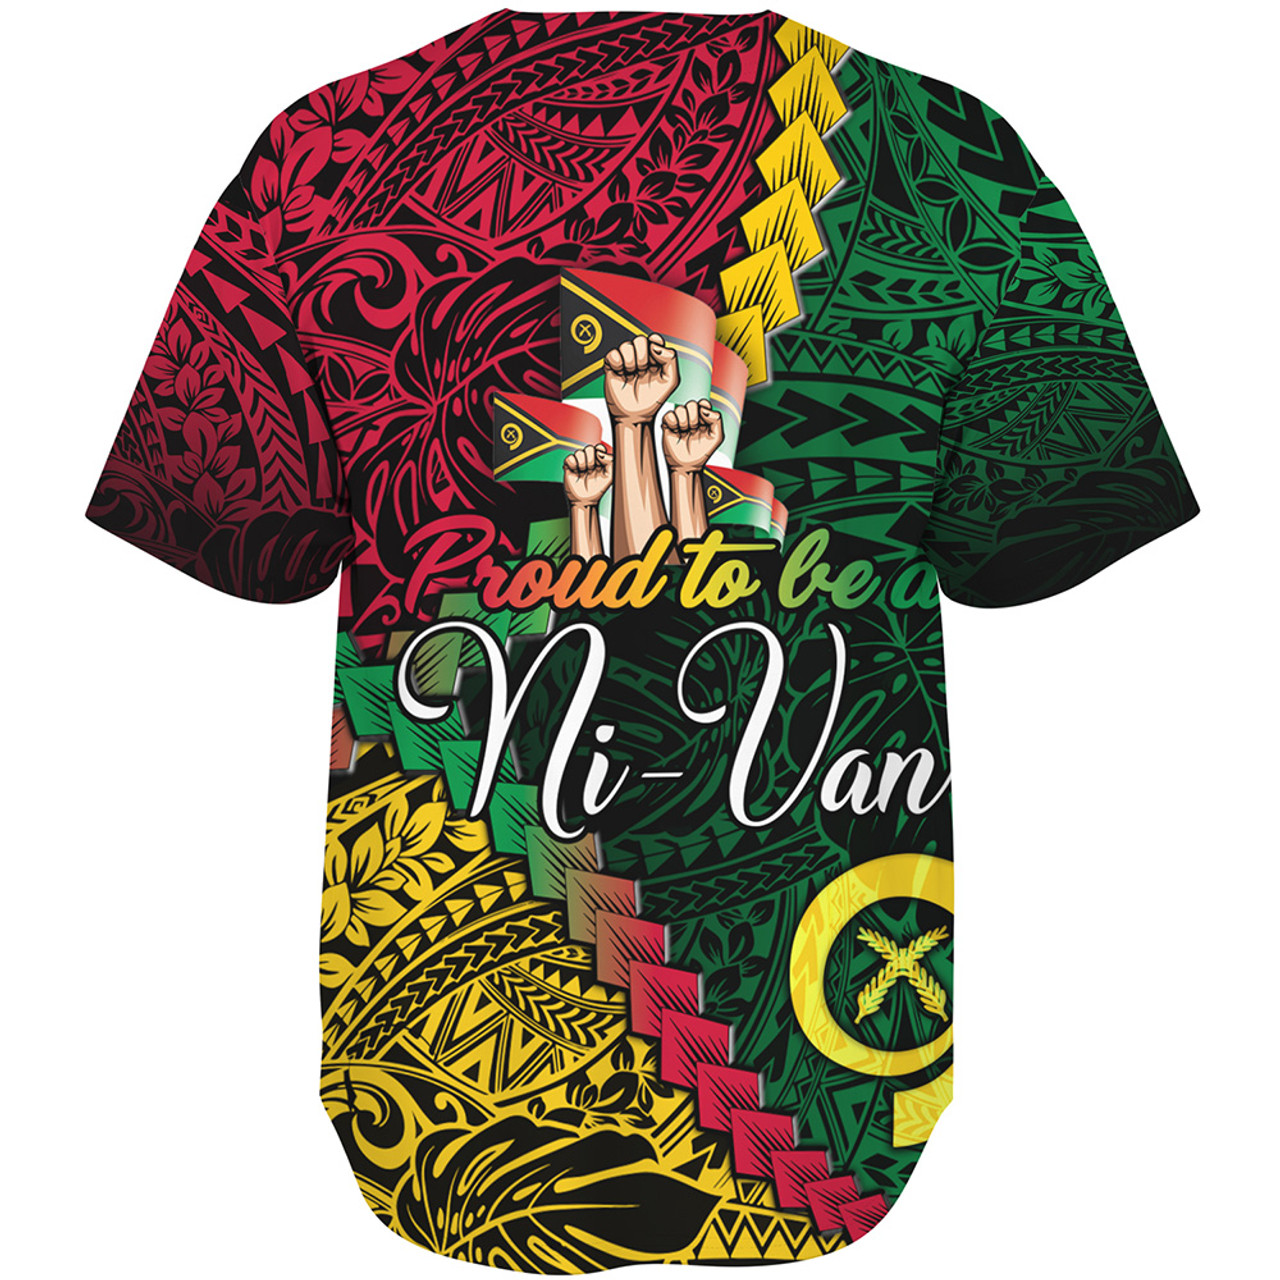 Vanuatu Baseball Shirt Proud To Be A Ni-van